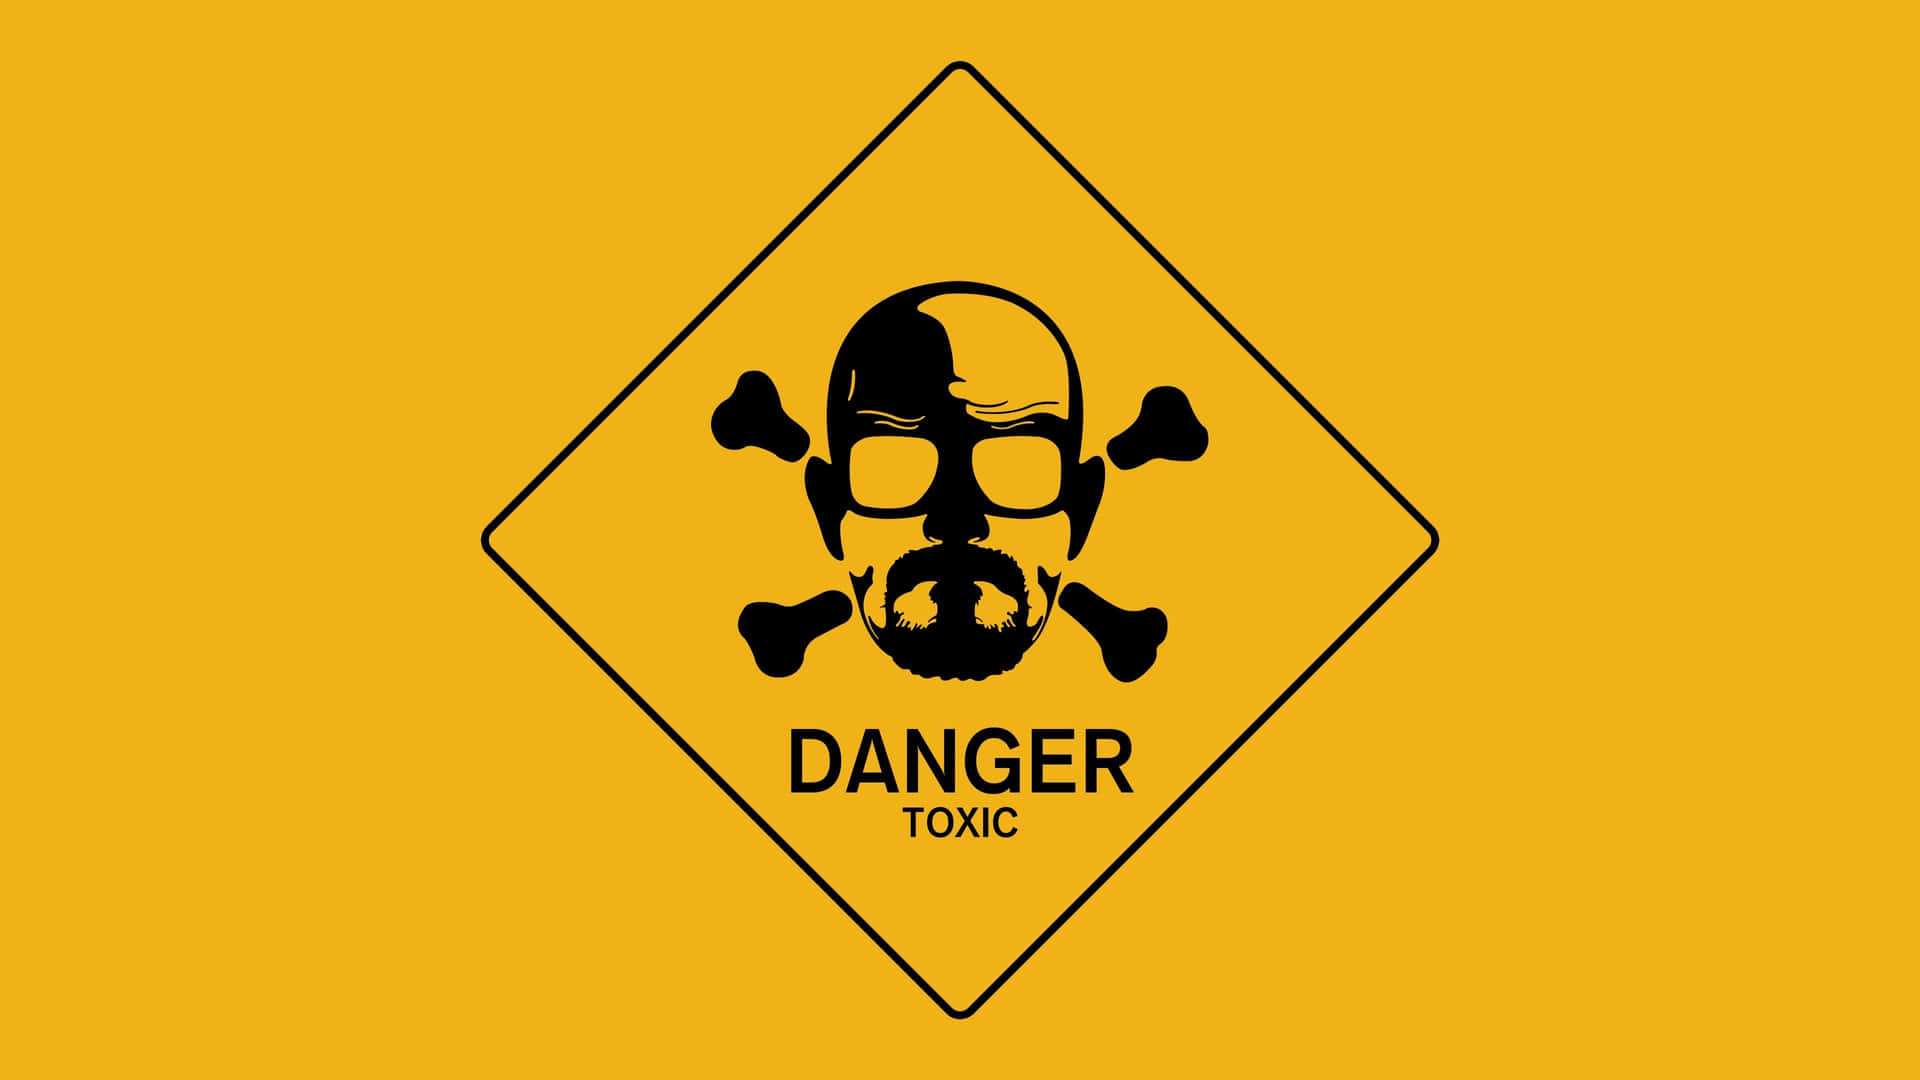 Iconic Toxic Warning Sign Background